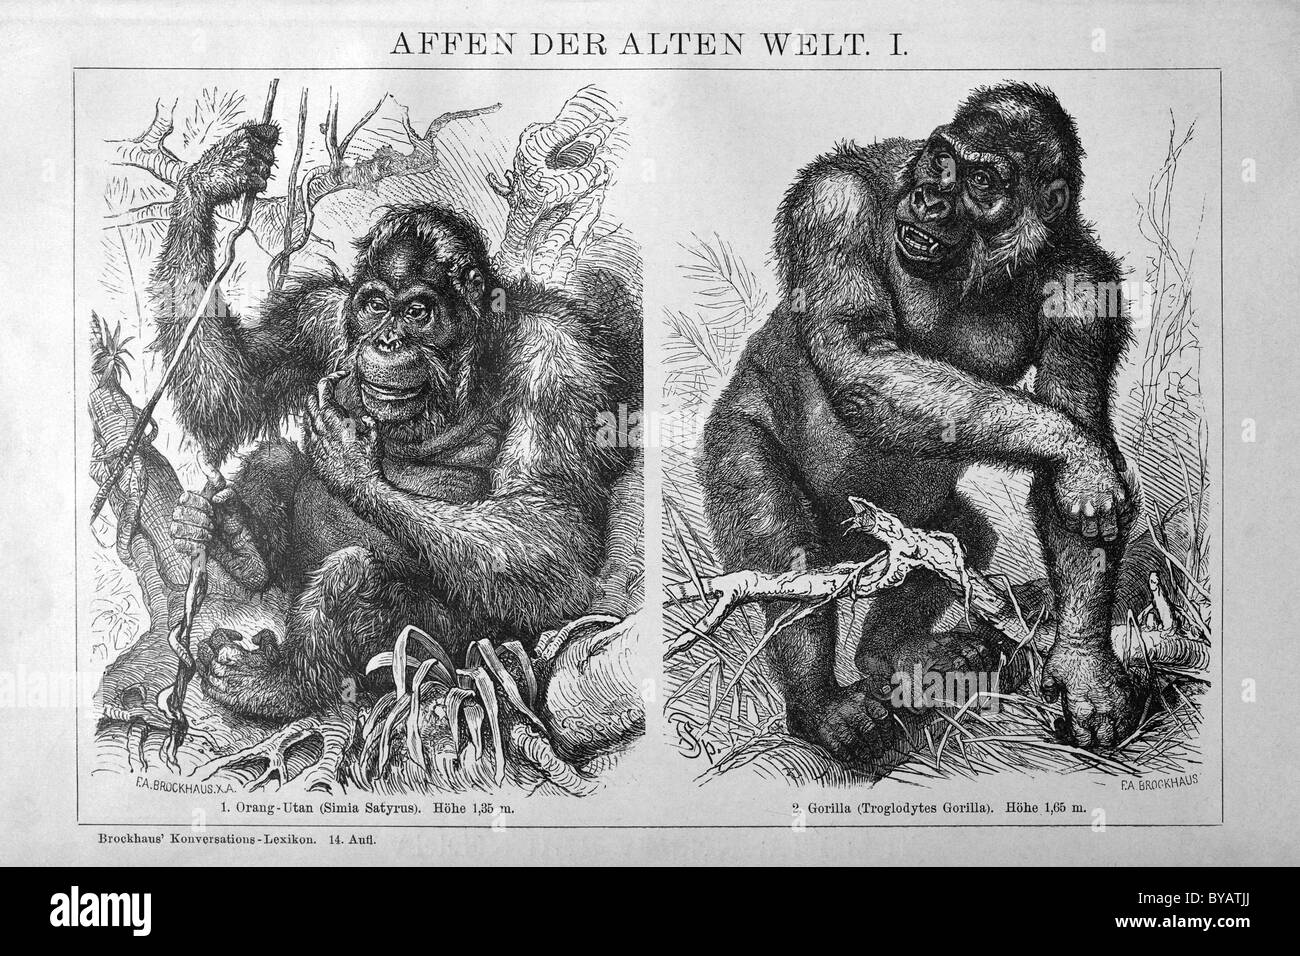 Bild von einem Orang-Utan (Simia Satyrus) und ein Gorilla (Troglodytes Gorilla) neben einander, historische Buchillustration Stockfoto